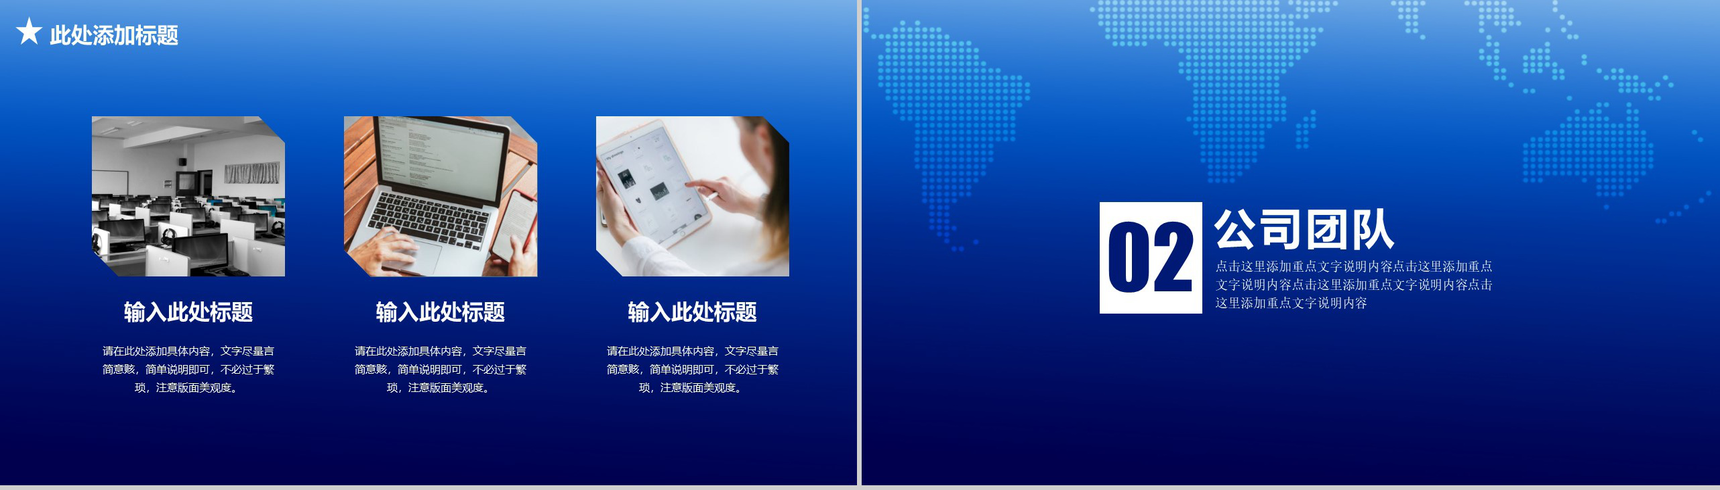 商务科技公司简介企业宣传PPT模板-4